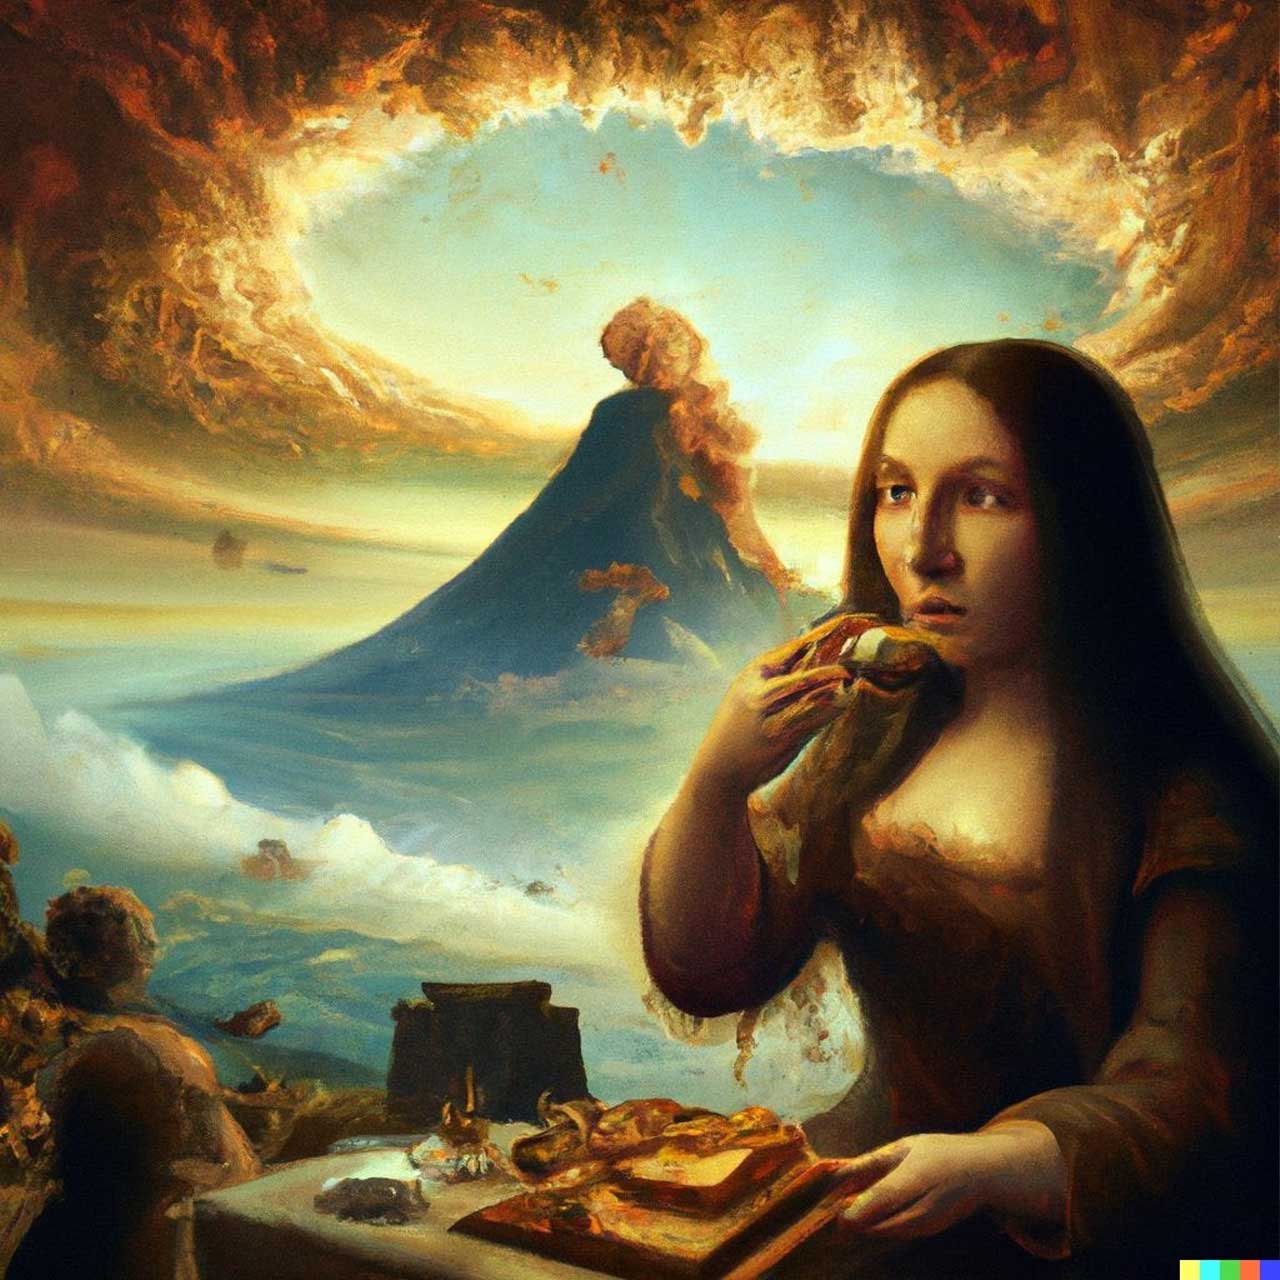 Mona Lisa kek yiyor